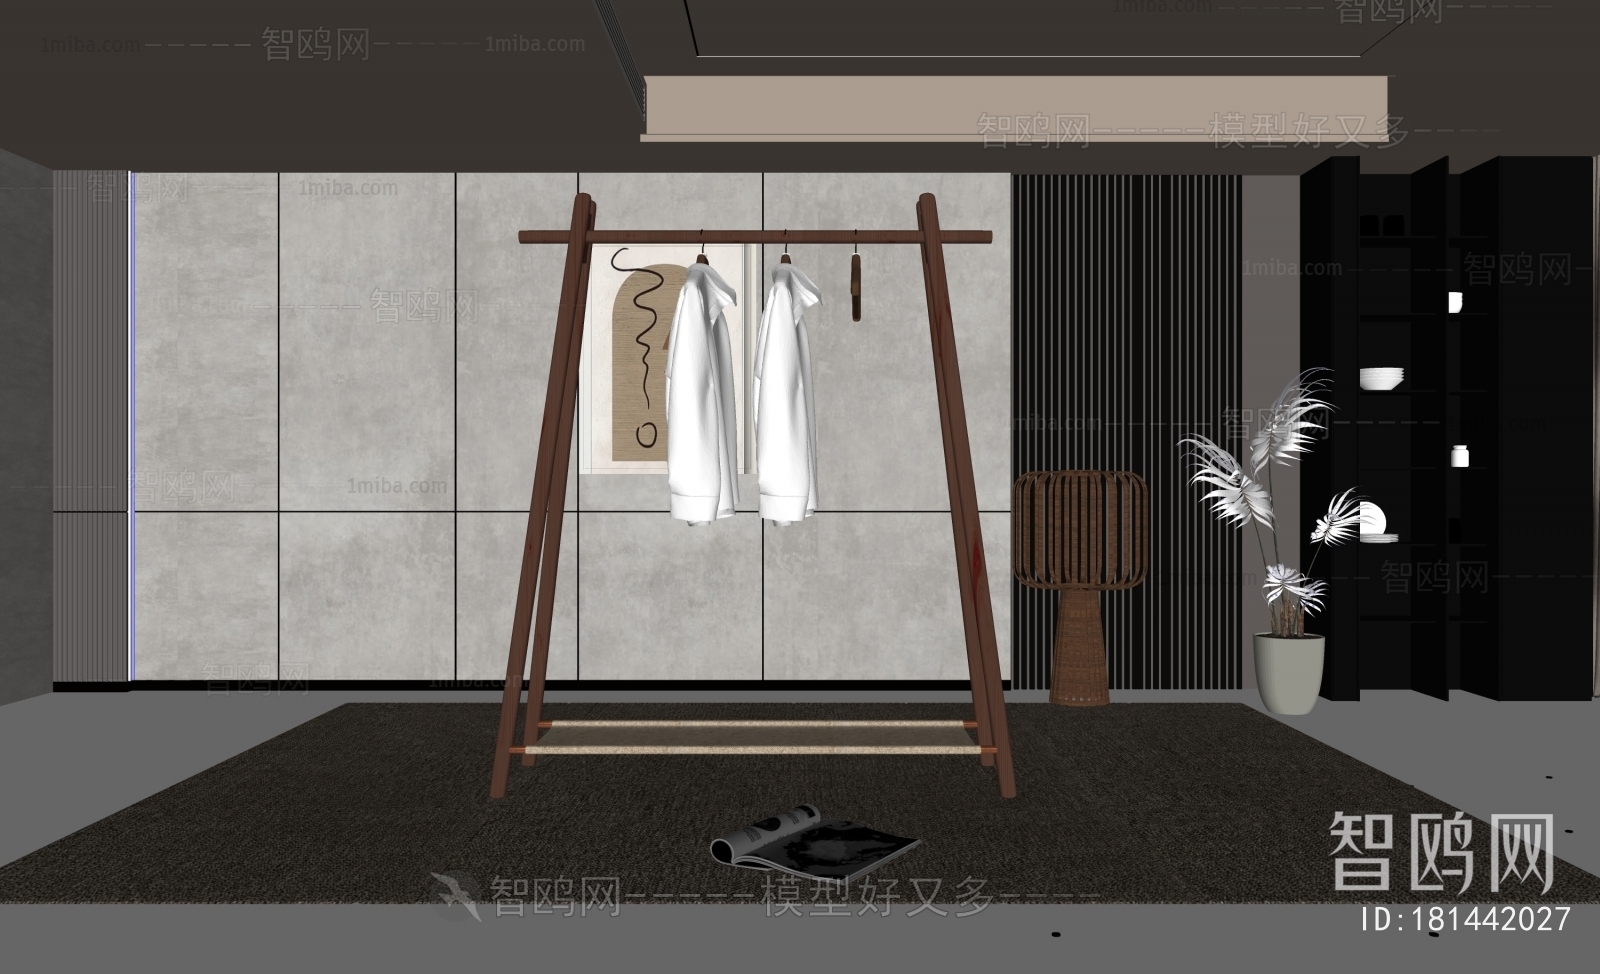 Wabi-sabi Style Coat Hanger